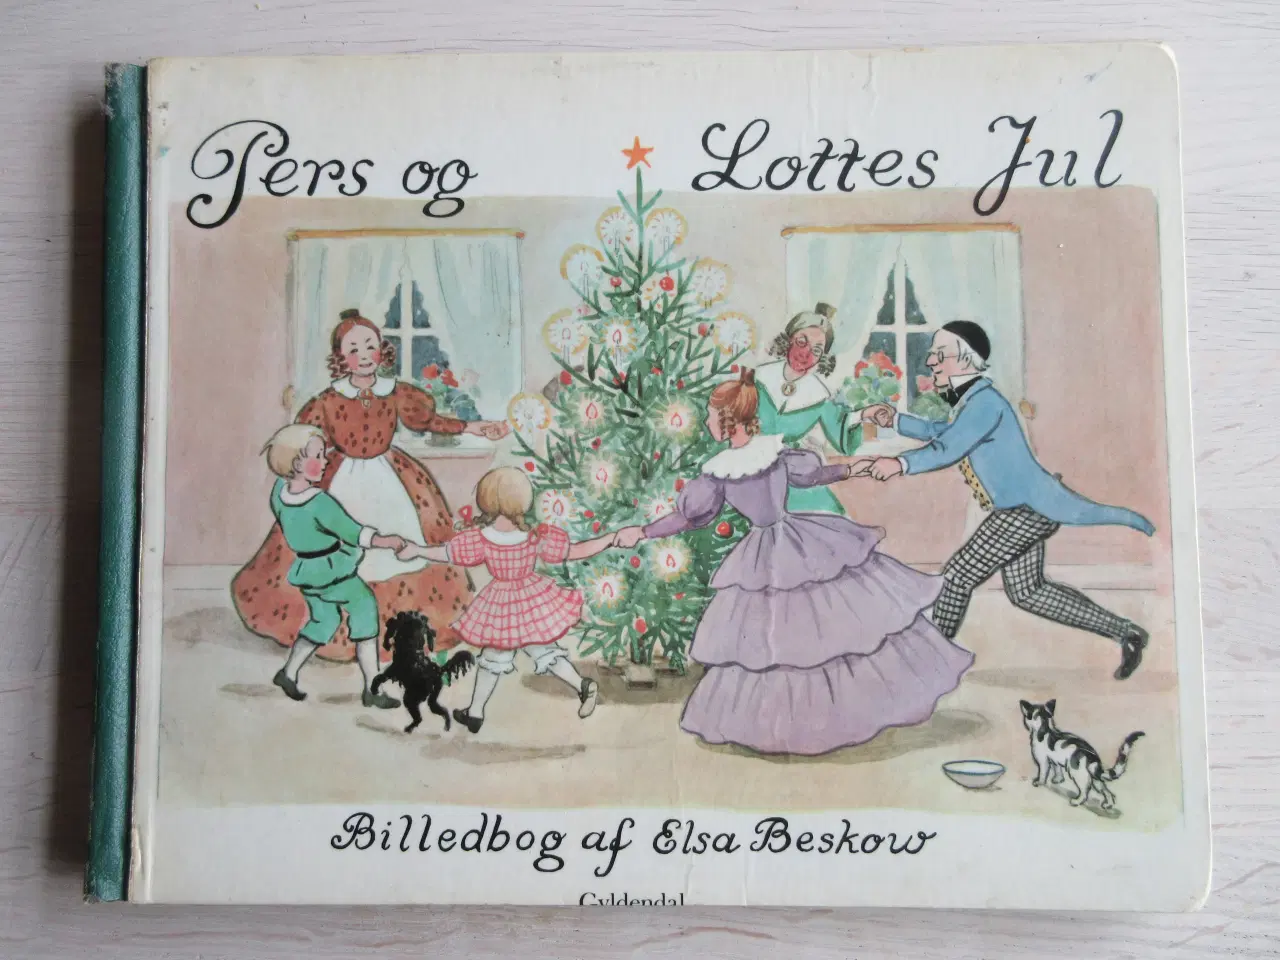 Billede 1 - Pers og Lottes jul - af Elsa Beskow ;-)